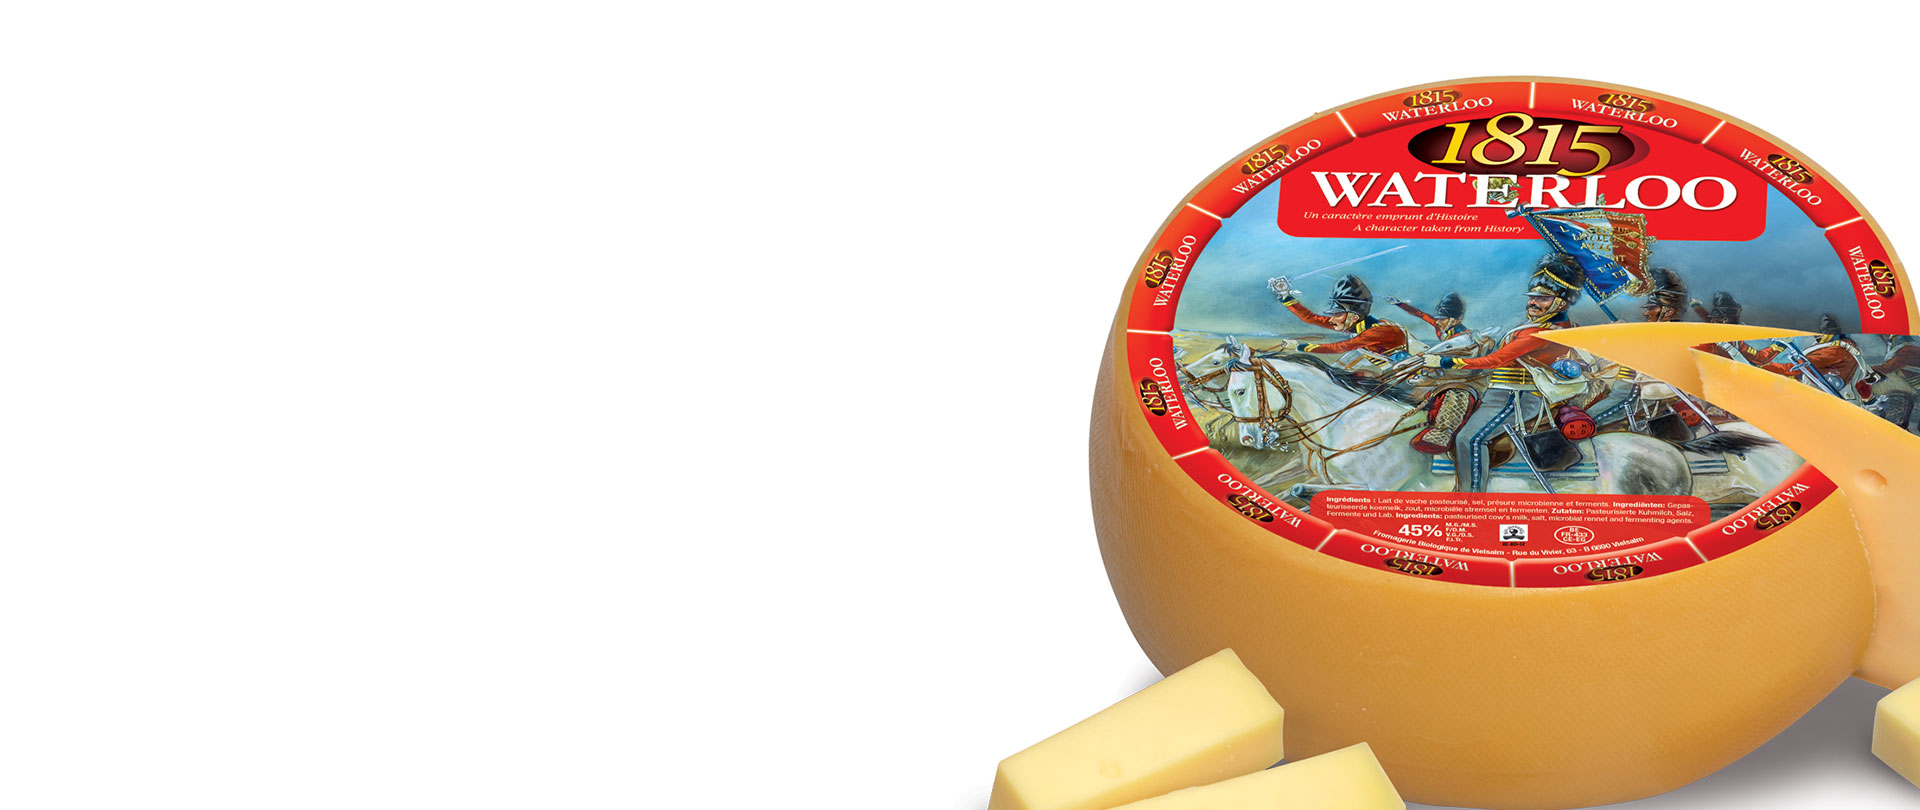 Le 1815 WATERLOO, un fromage vainqueur !